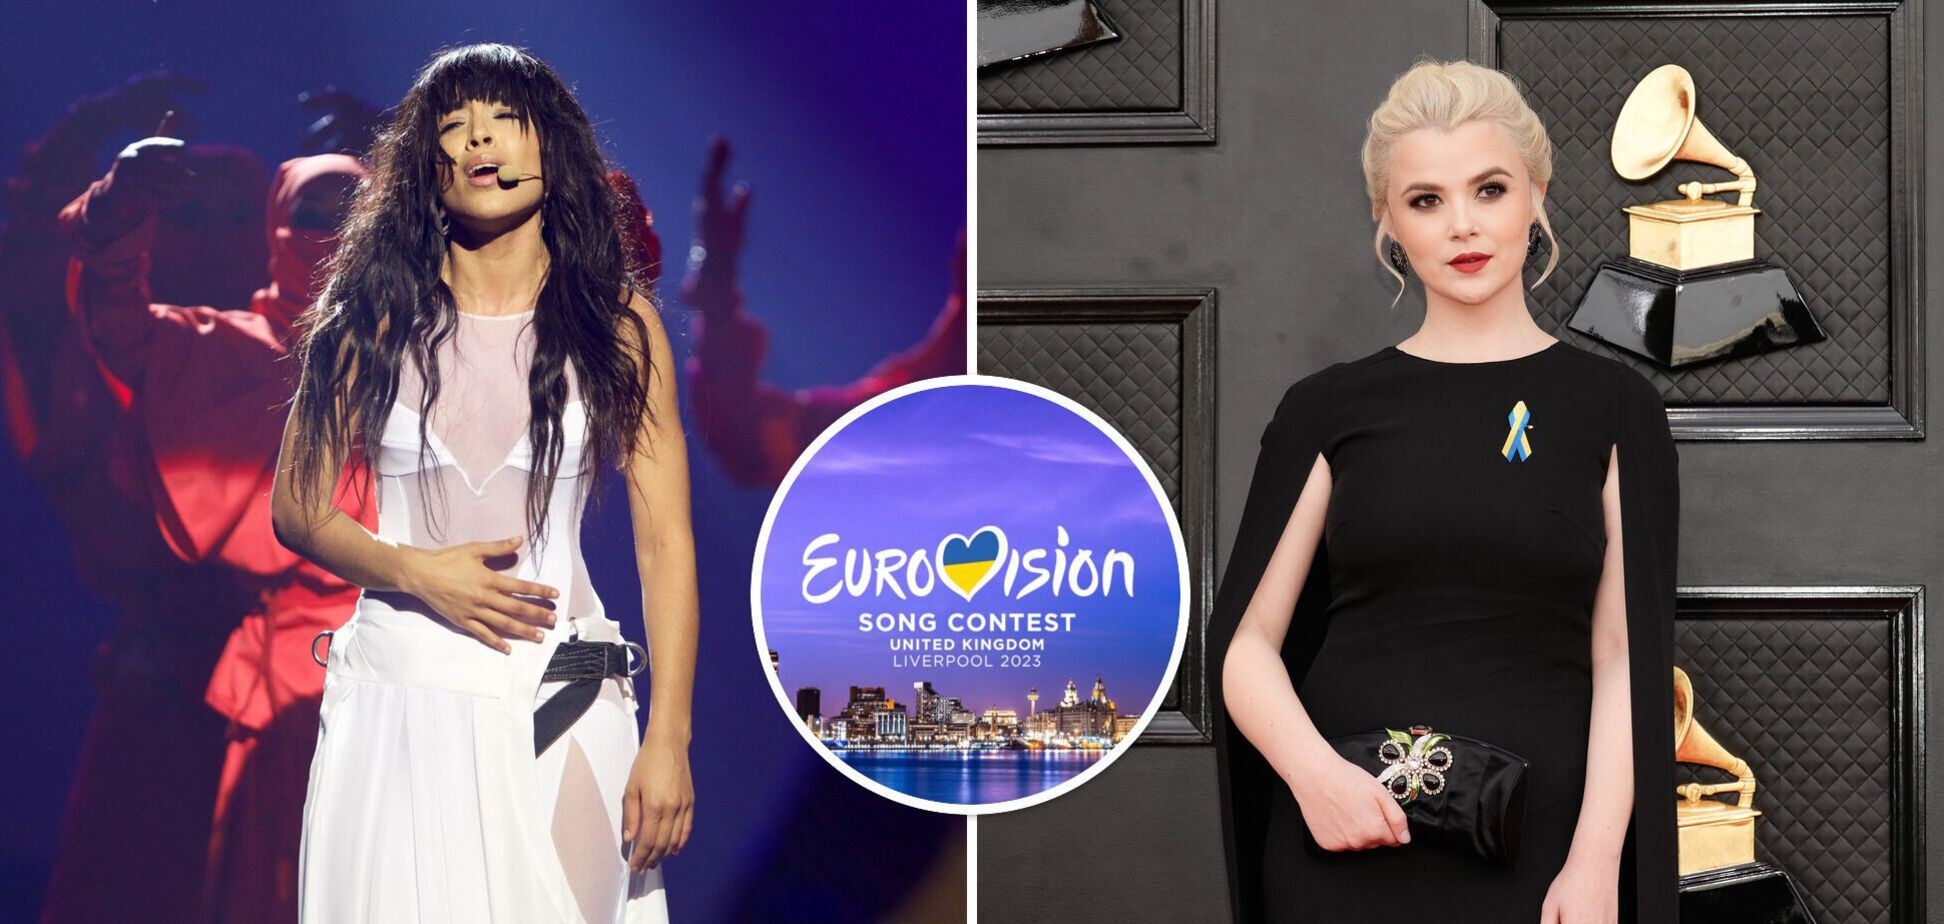 Фаворитку букмекеров на Евровидении-2023 Loreen из Швеции обвинили в 'краже' песни у Мики Ньютон: подробности